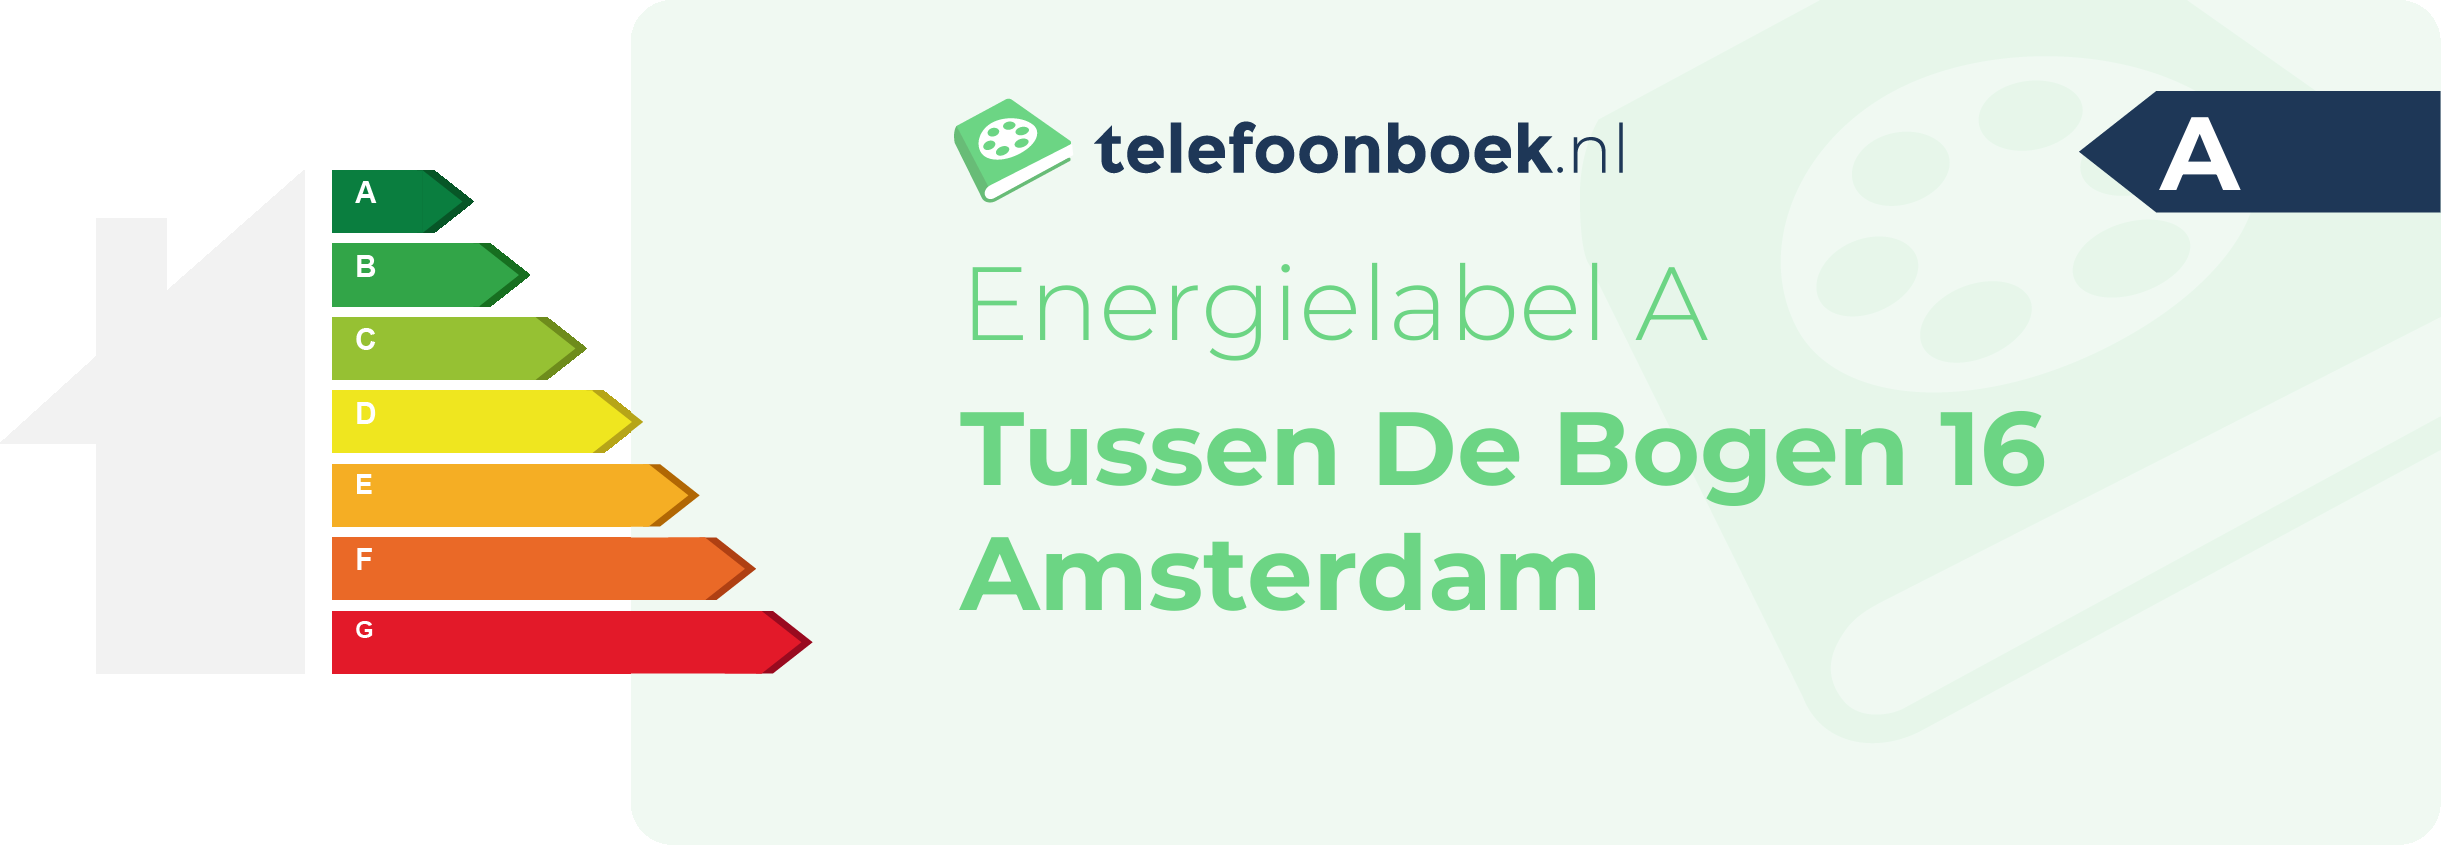 Energielabel Tussen De Bogen 16 Amsterdam